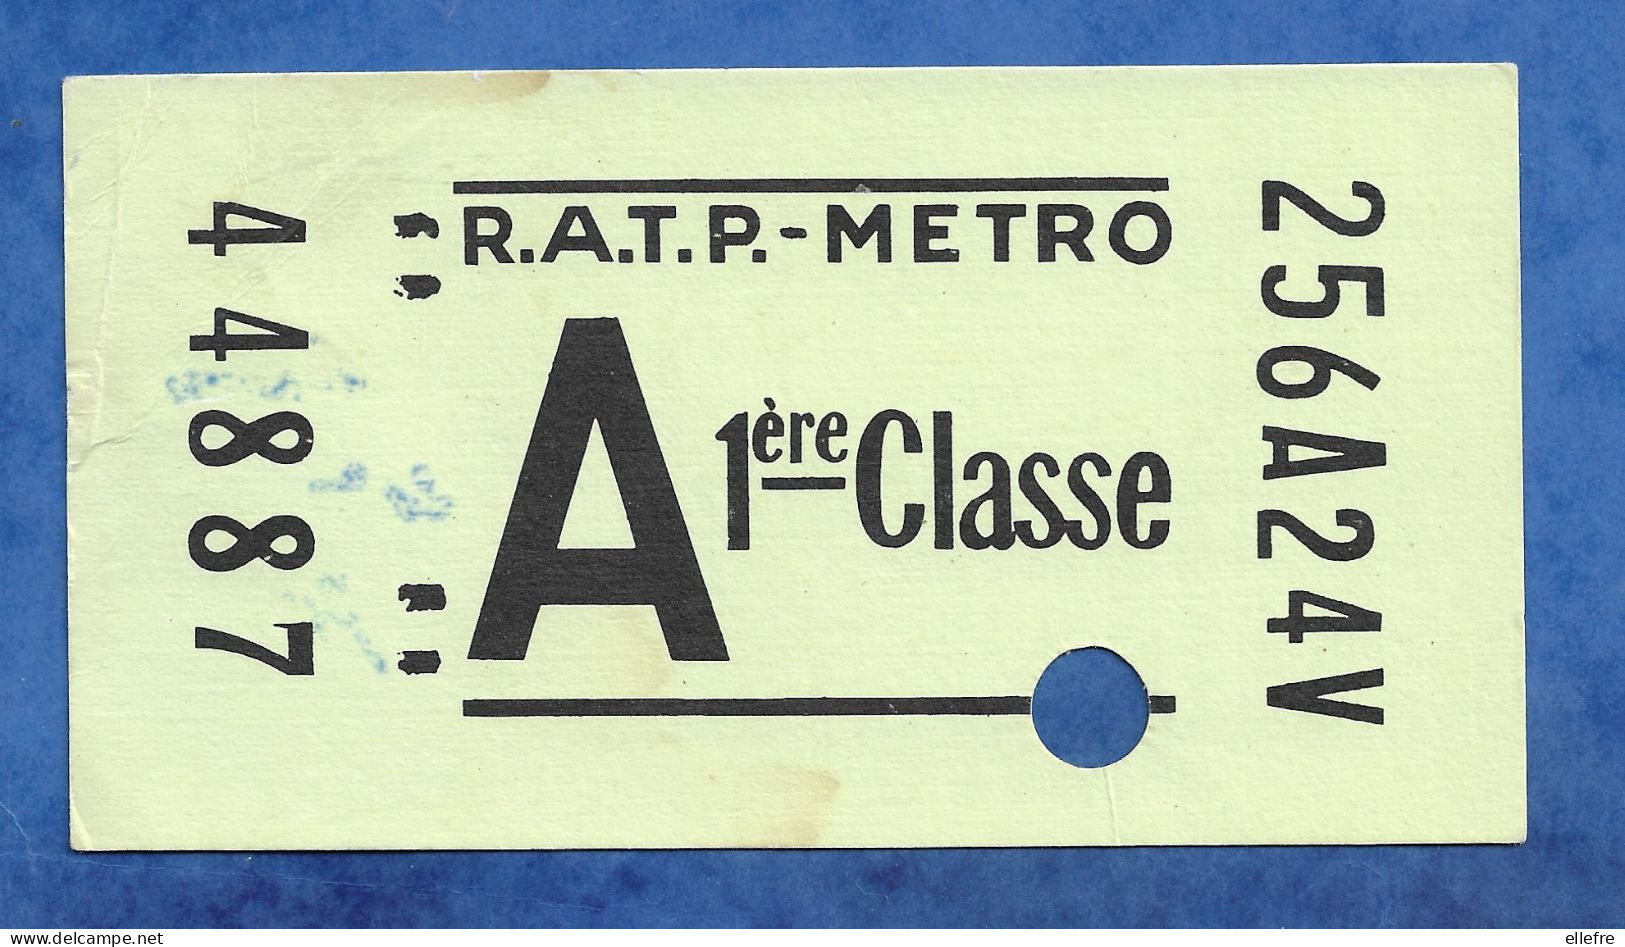 CARTE POSTALE ANNEES 1960 1970 EN FORME TICKET METRO GEANT 1 Ere Classe RATP AUTOBUS SERIE SHOPPING 30 PUBLISTAR PARIS - Metro